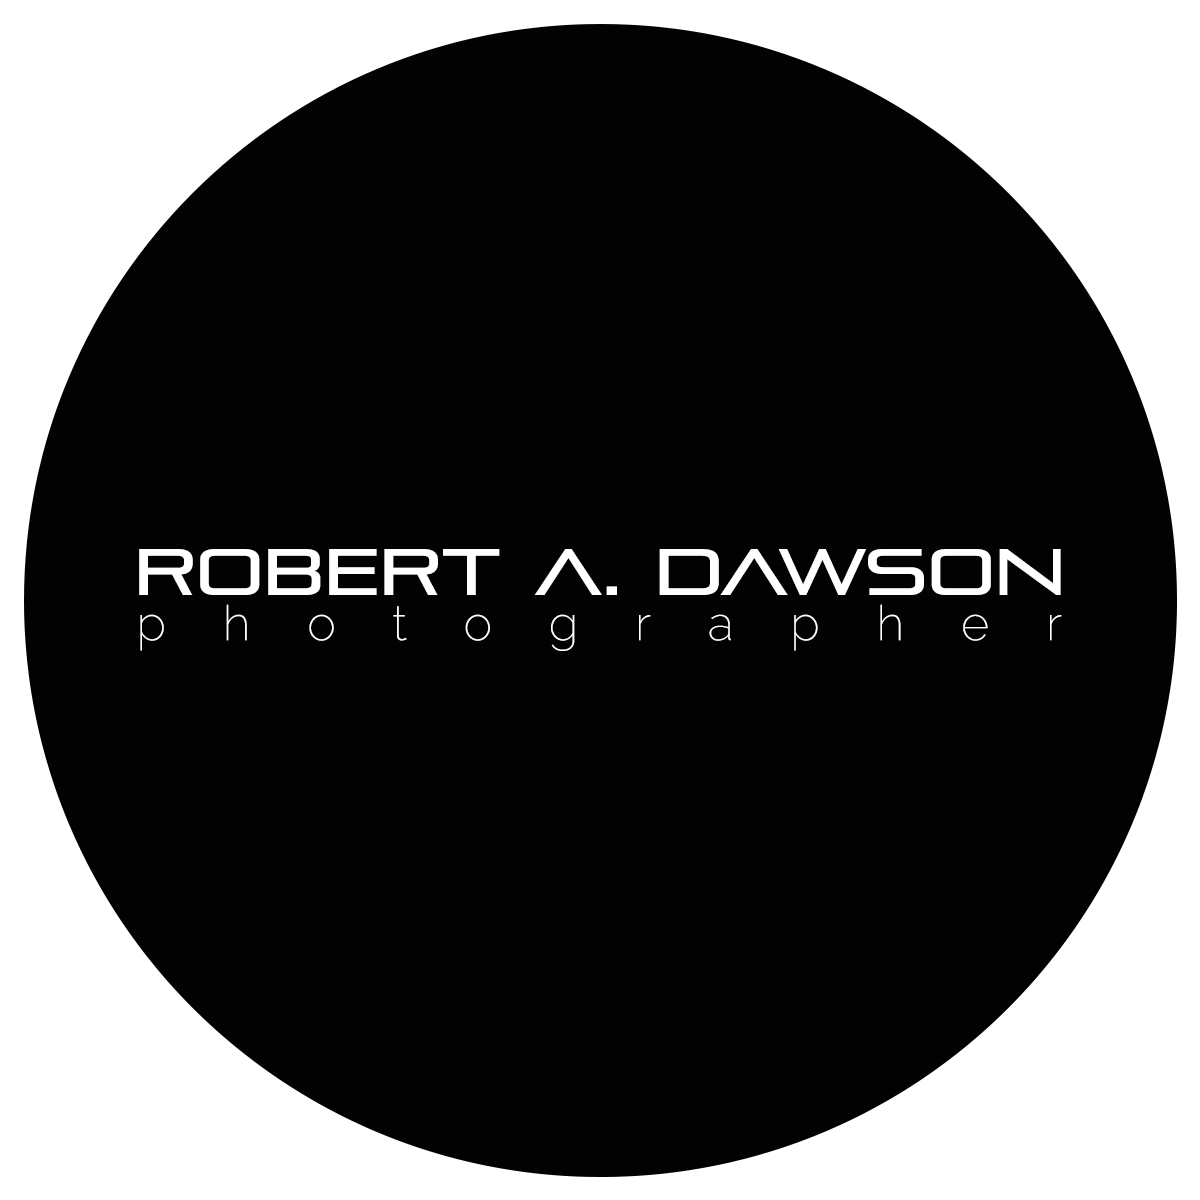 robertdawson logo